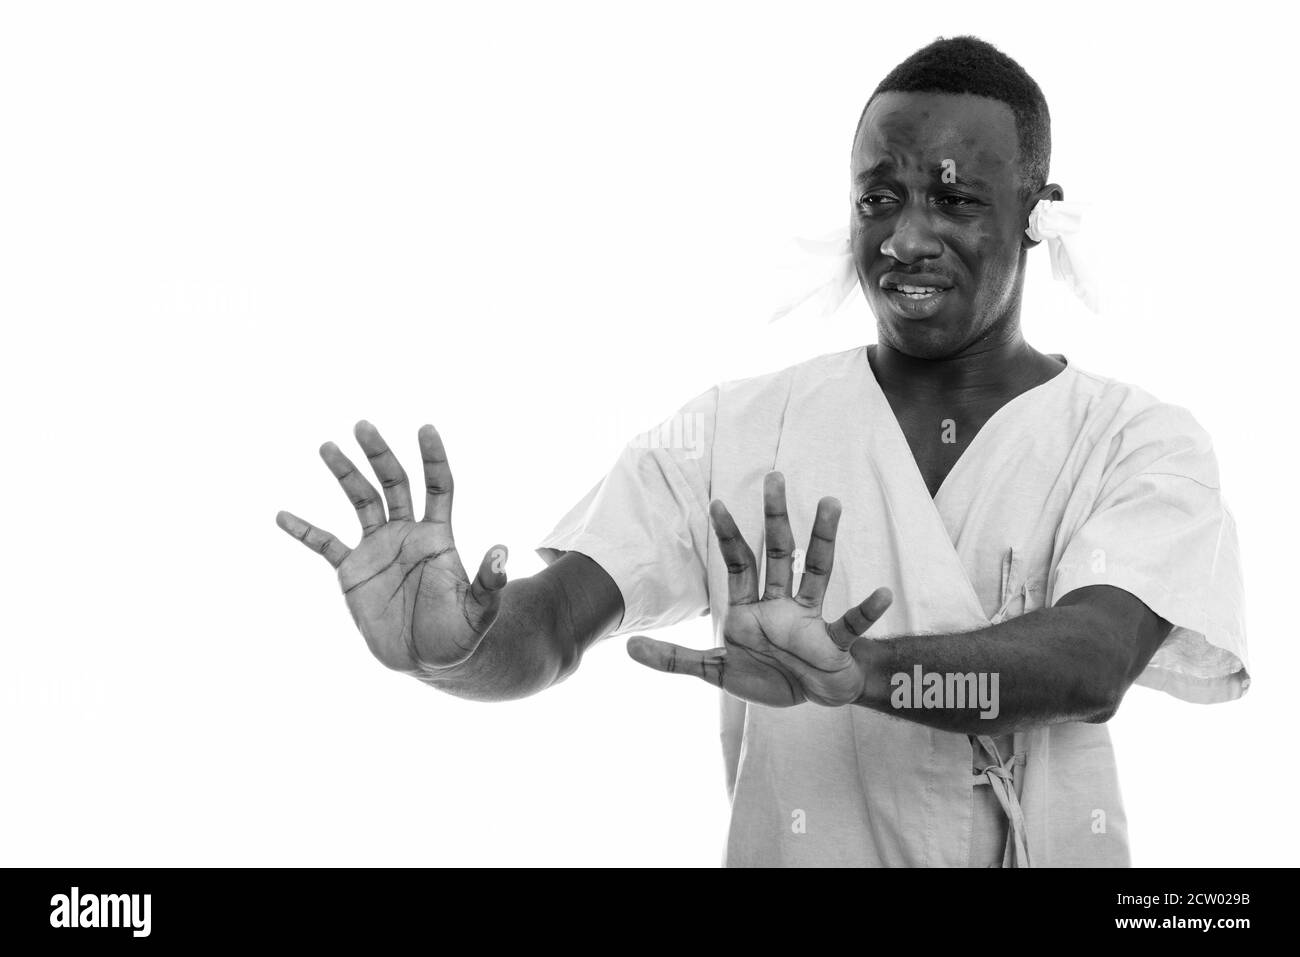 Jeune Africain homme patient malade avec des tissus dans son les oreilles et le panneau stop avec les deux mains Banque D'Images